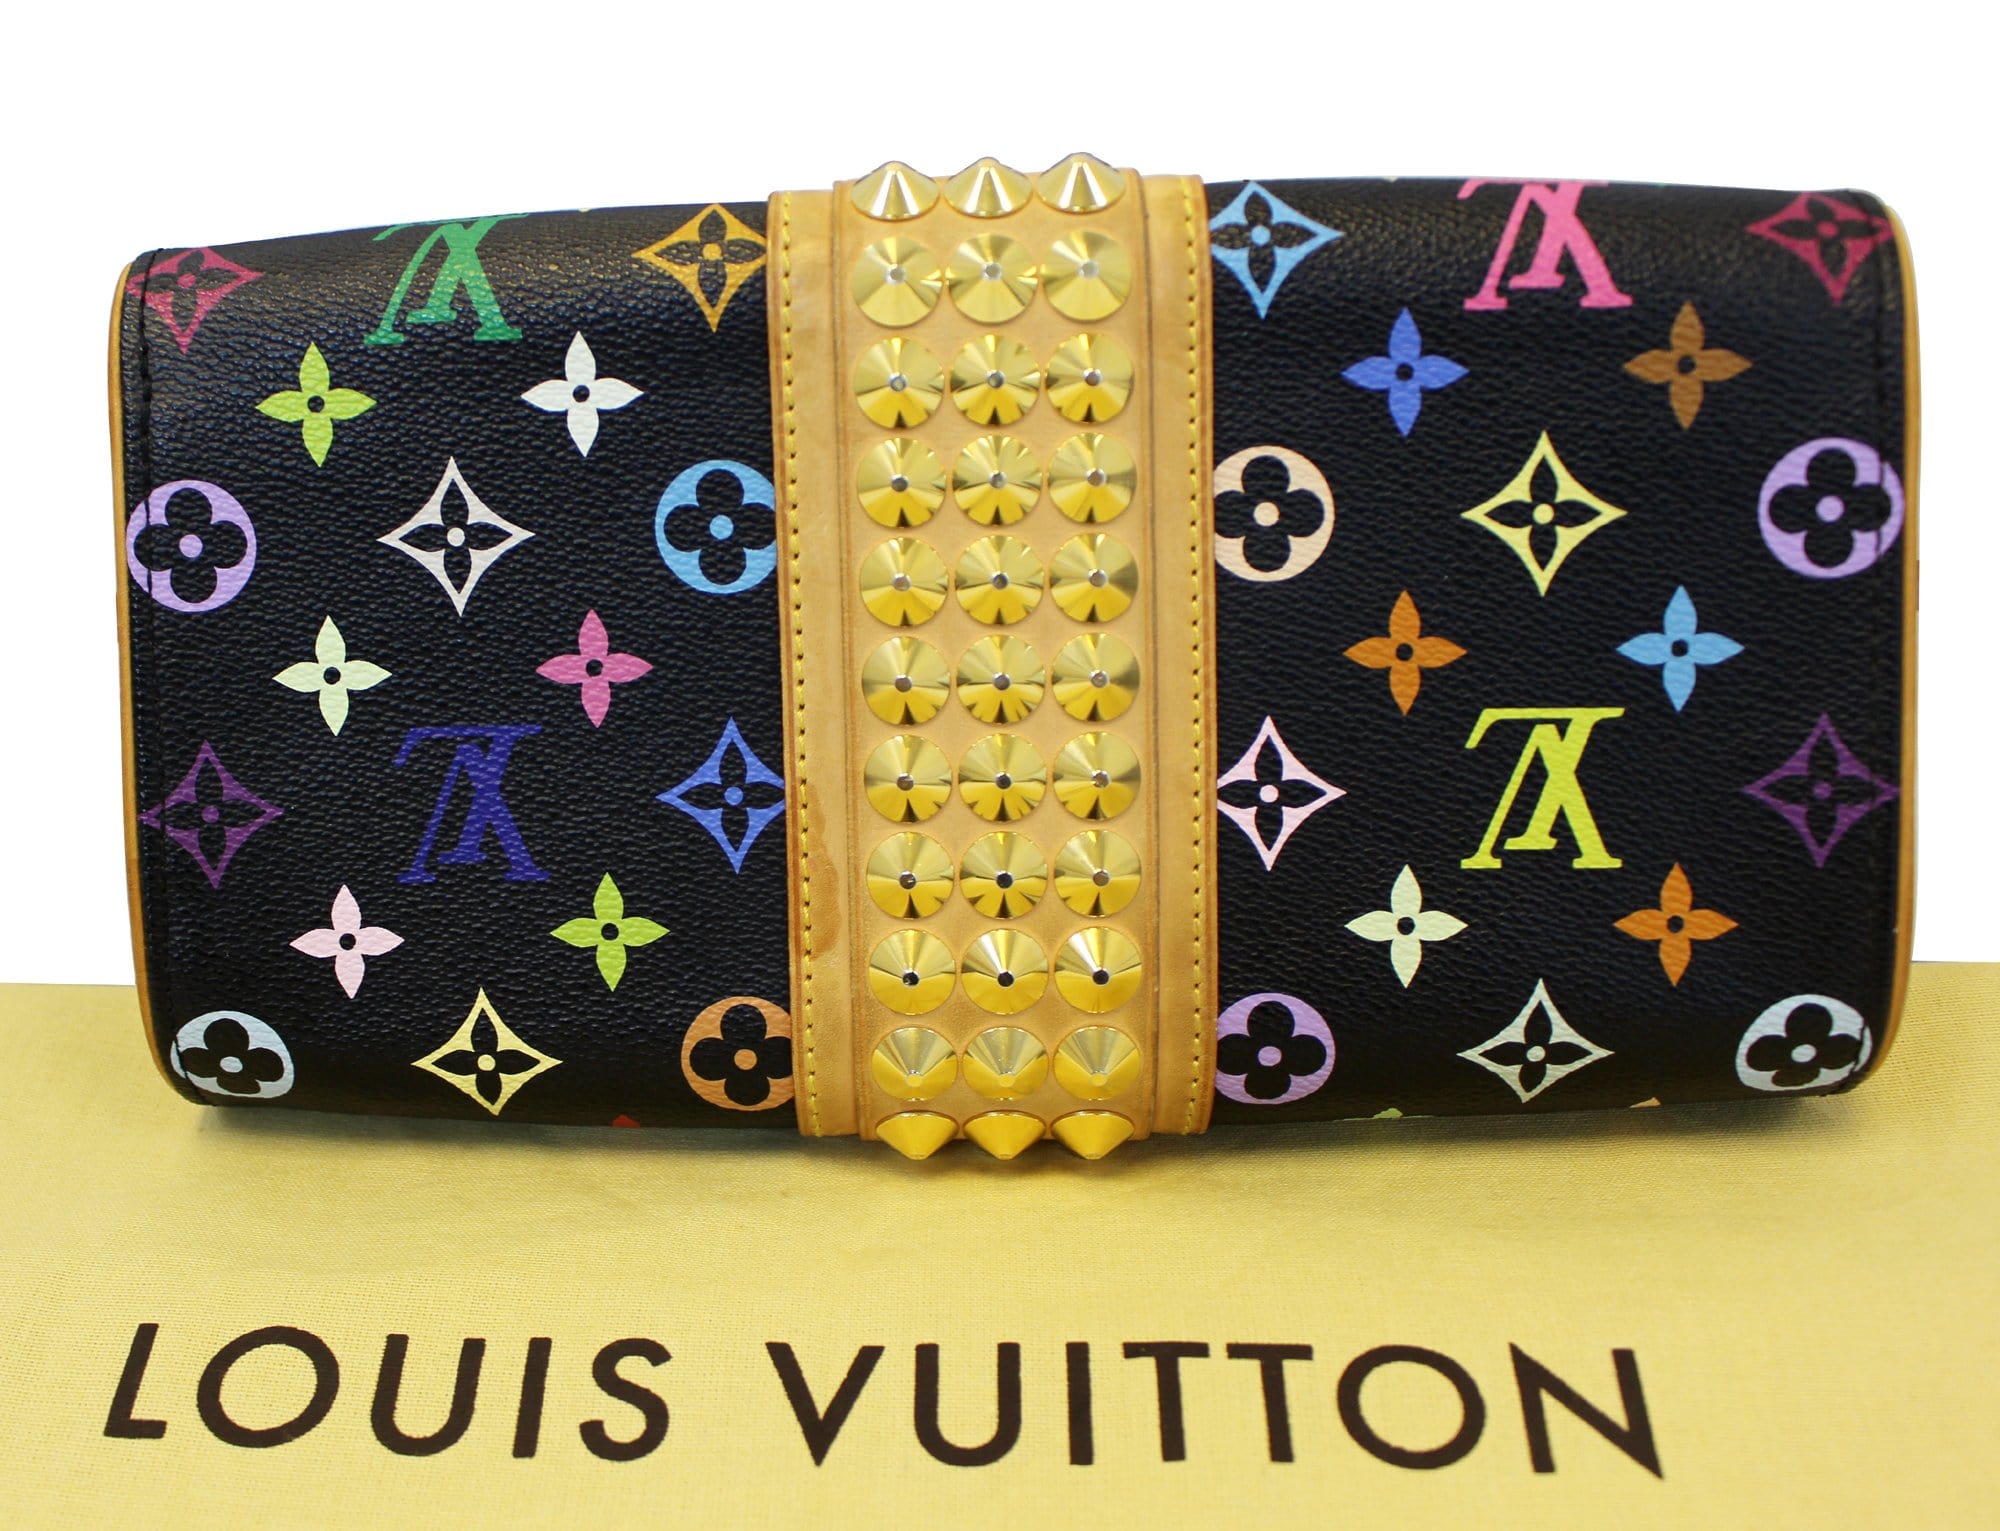 LOUIS VUITTON Courtney Multicolore Monogram Clutch Bag Black